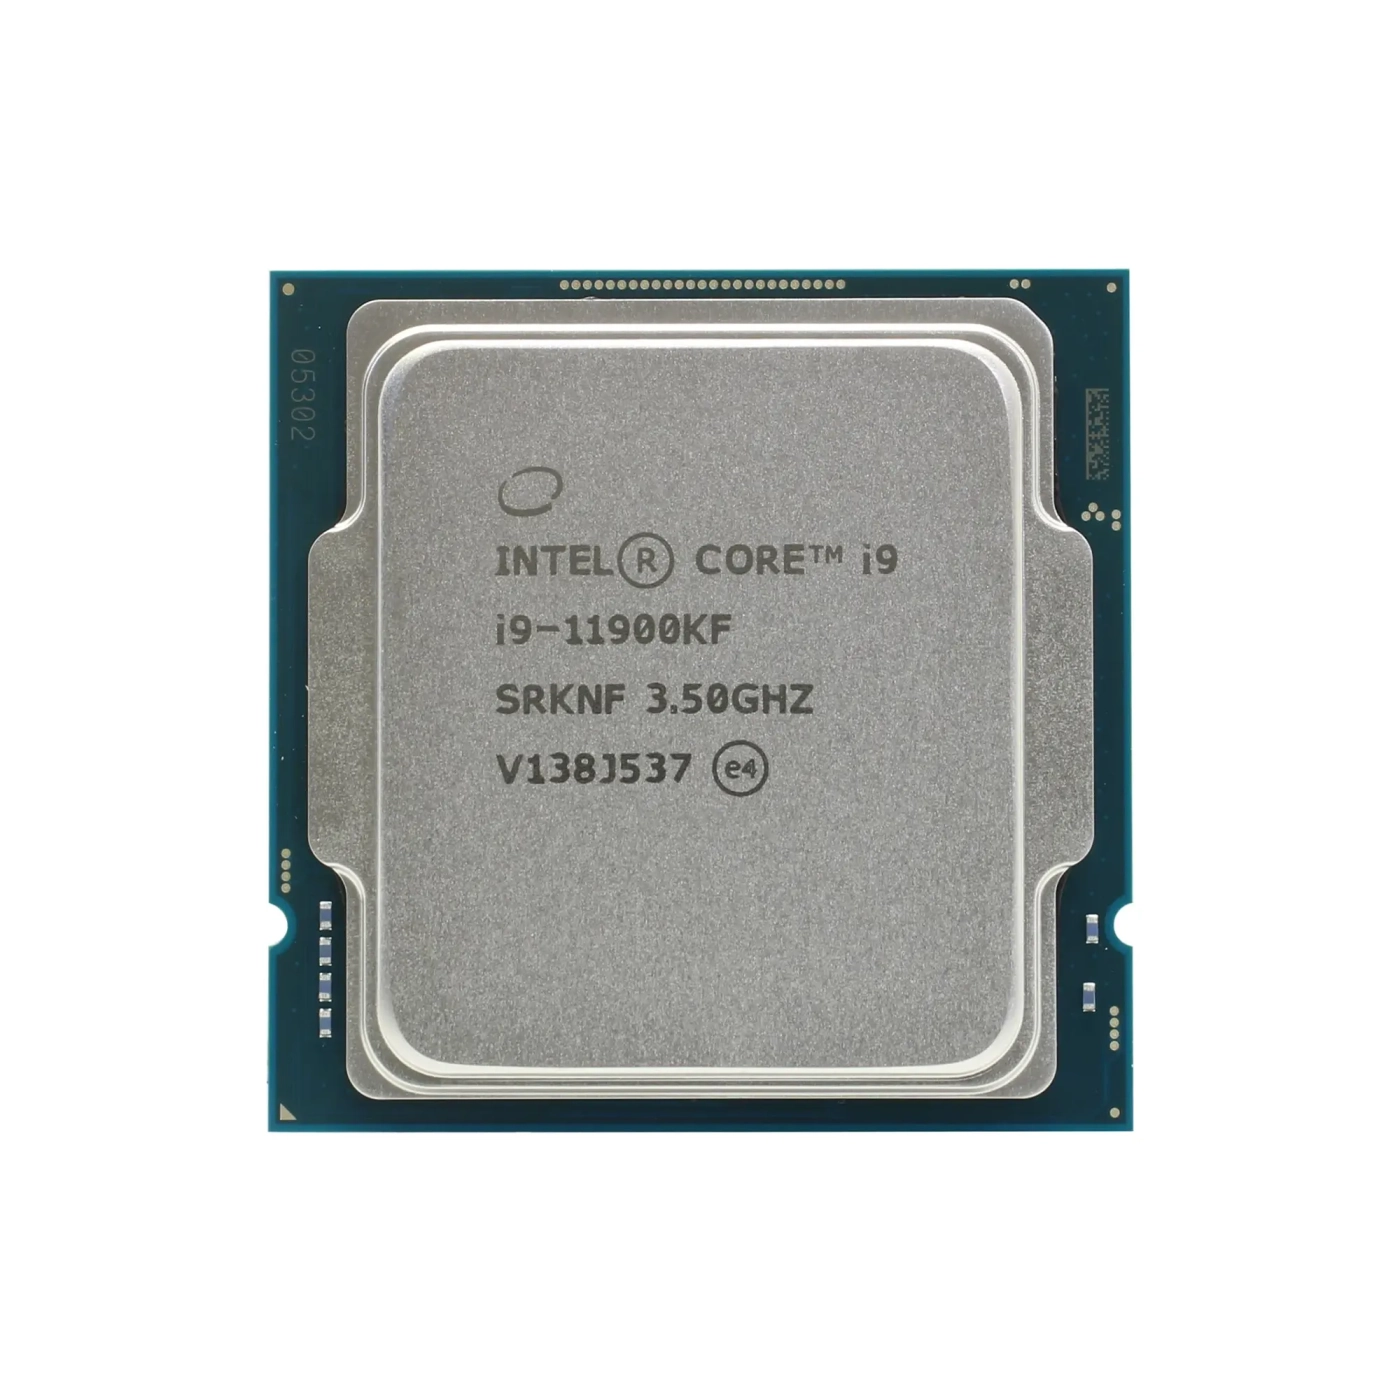 Купить Процессор INTEL Core i9-11900KF 3.5GHz 16MB LGA1200 TRAY (CM8070804400164) - фото 1